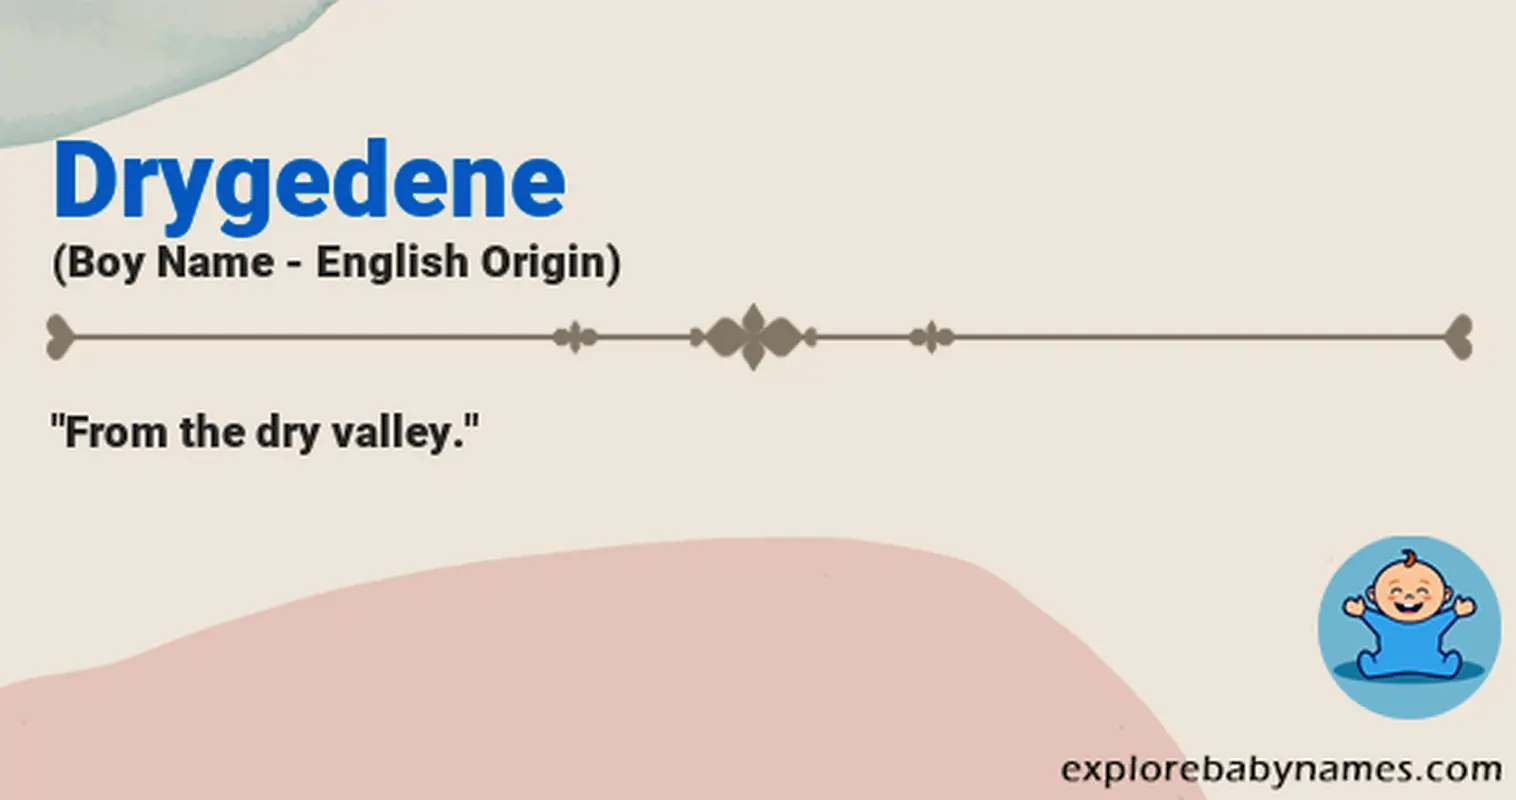 Meaning of Drygedene